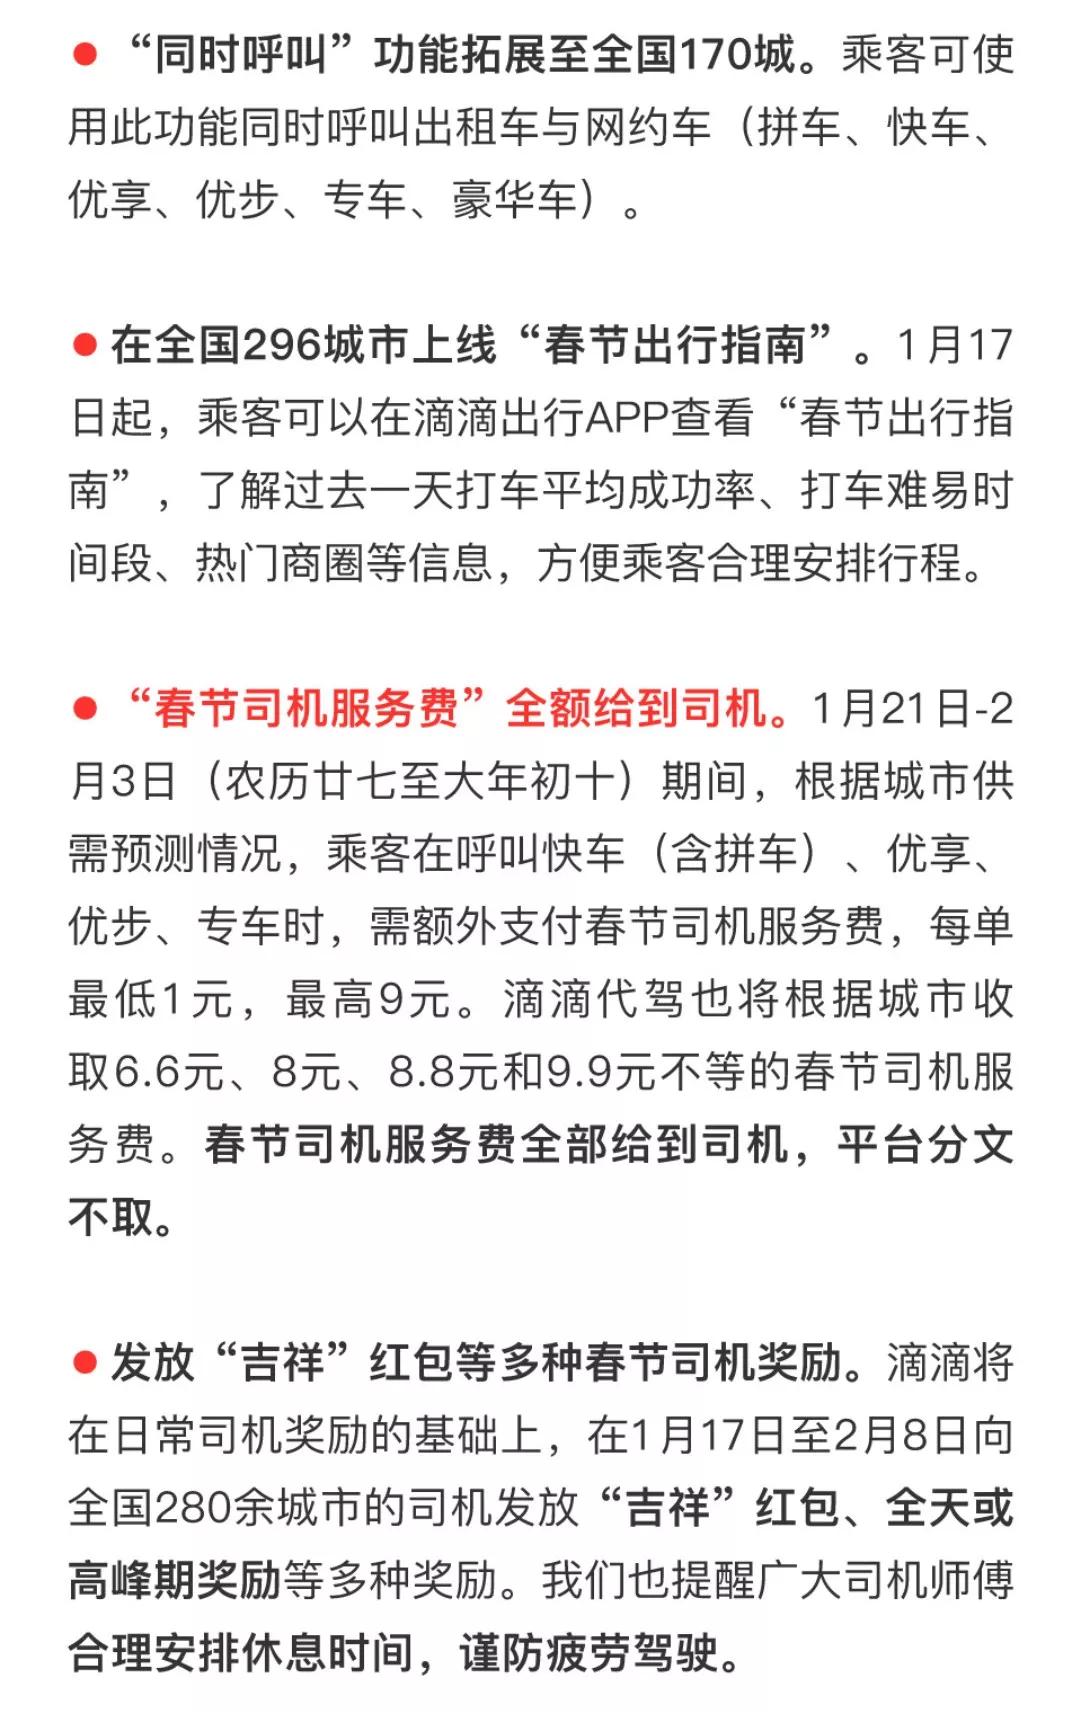 1月13日,滴滴发布2020年春节公开信